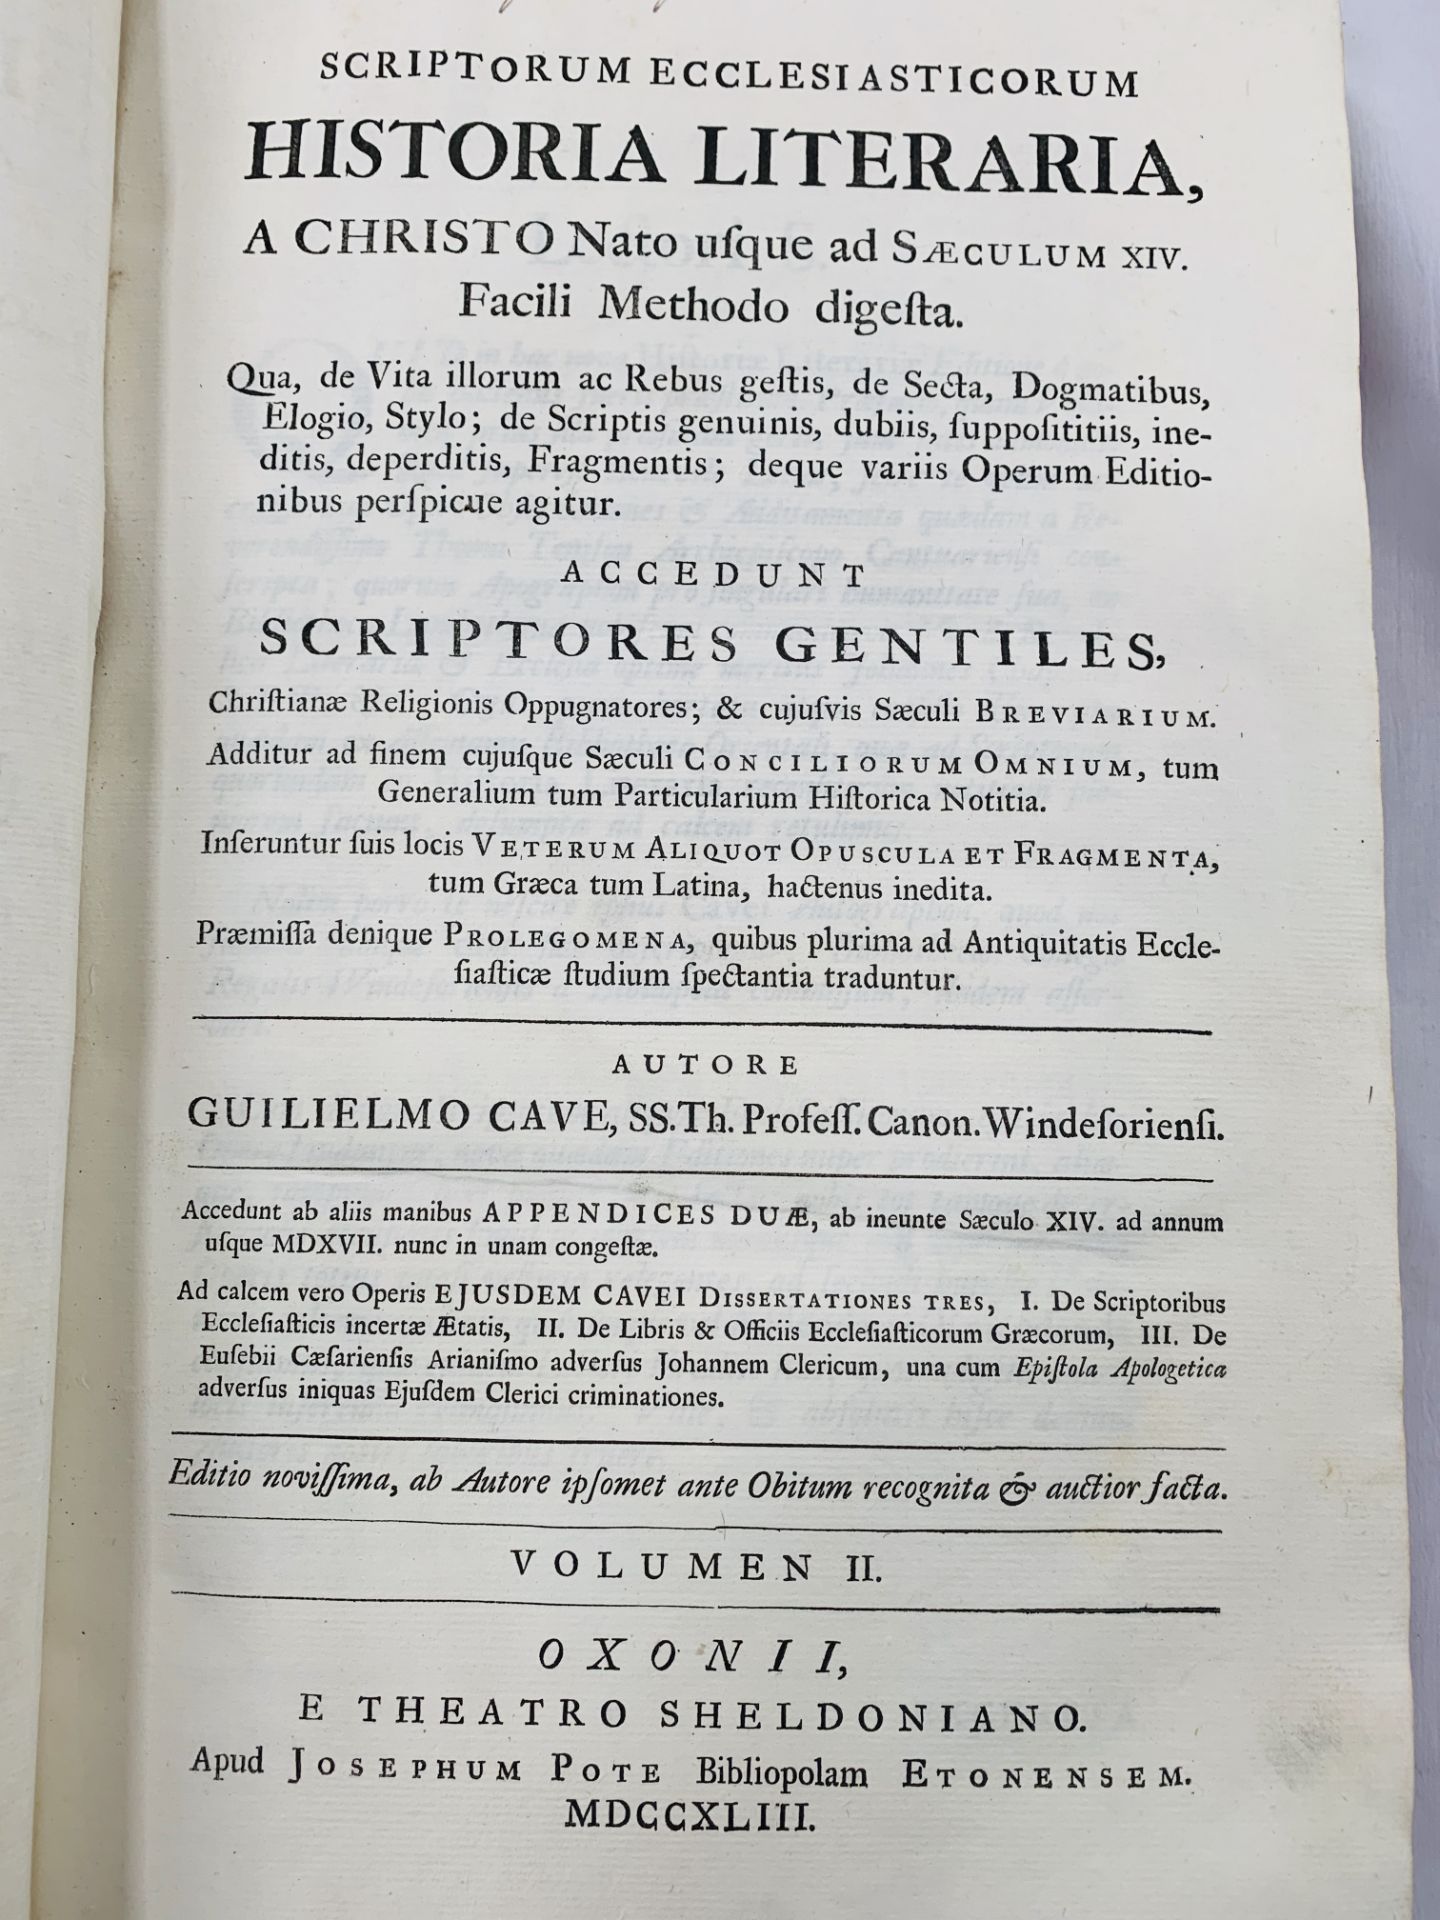 William Cave - Scriptorum Ecclesiasticorum Historia Literaria A Christo Nato Usque and Seculum XIV. - Image 2 of 3